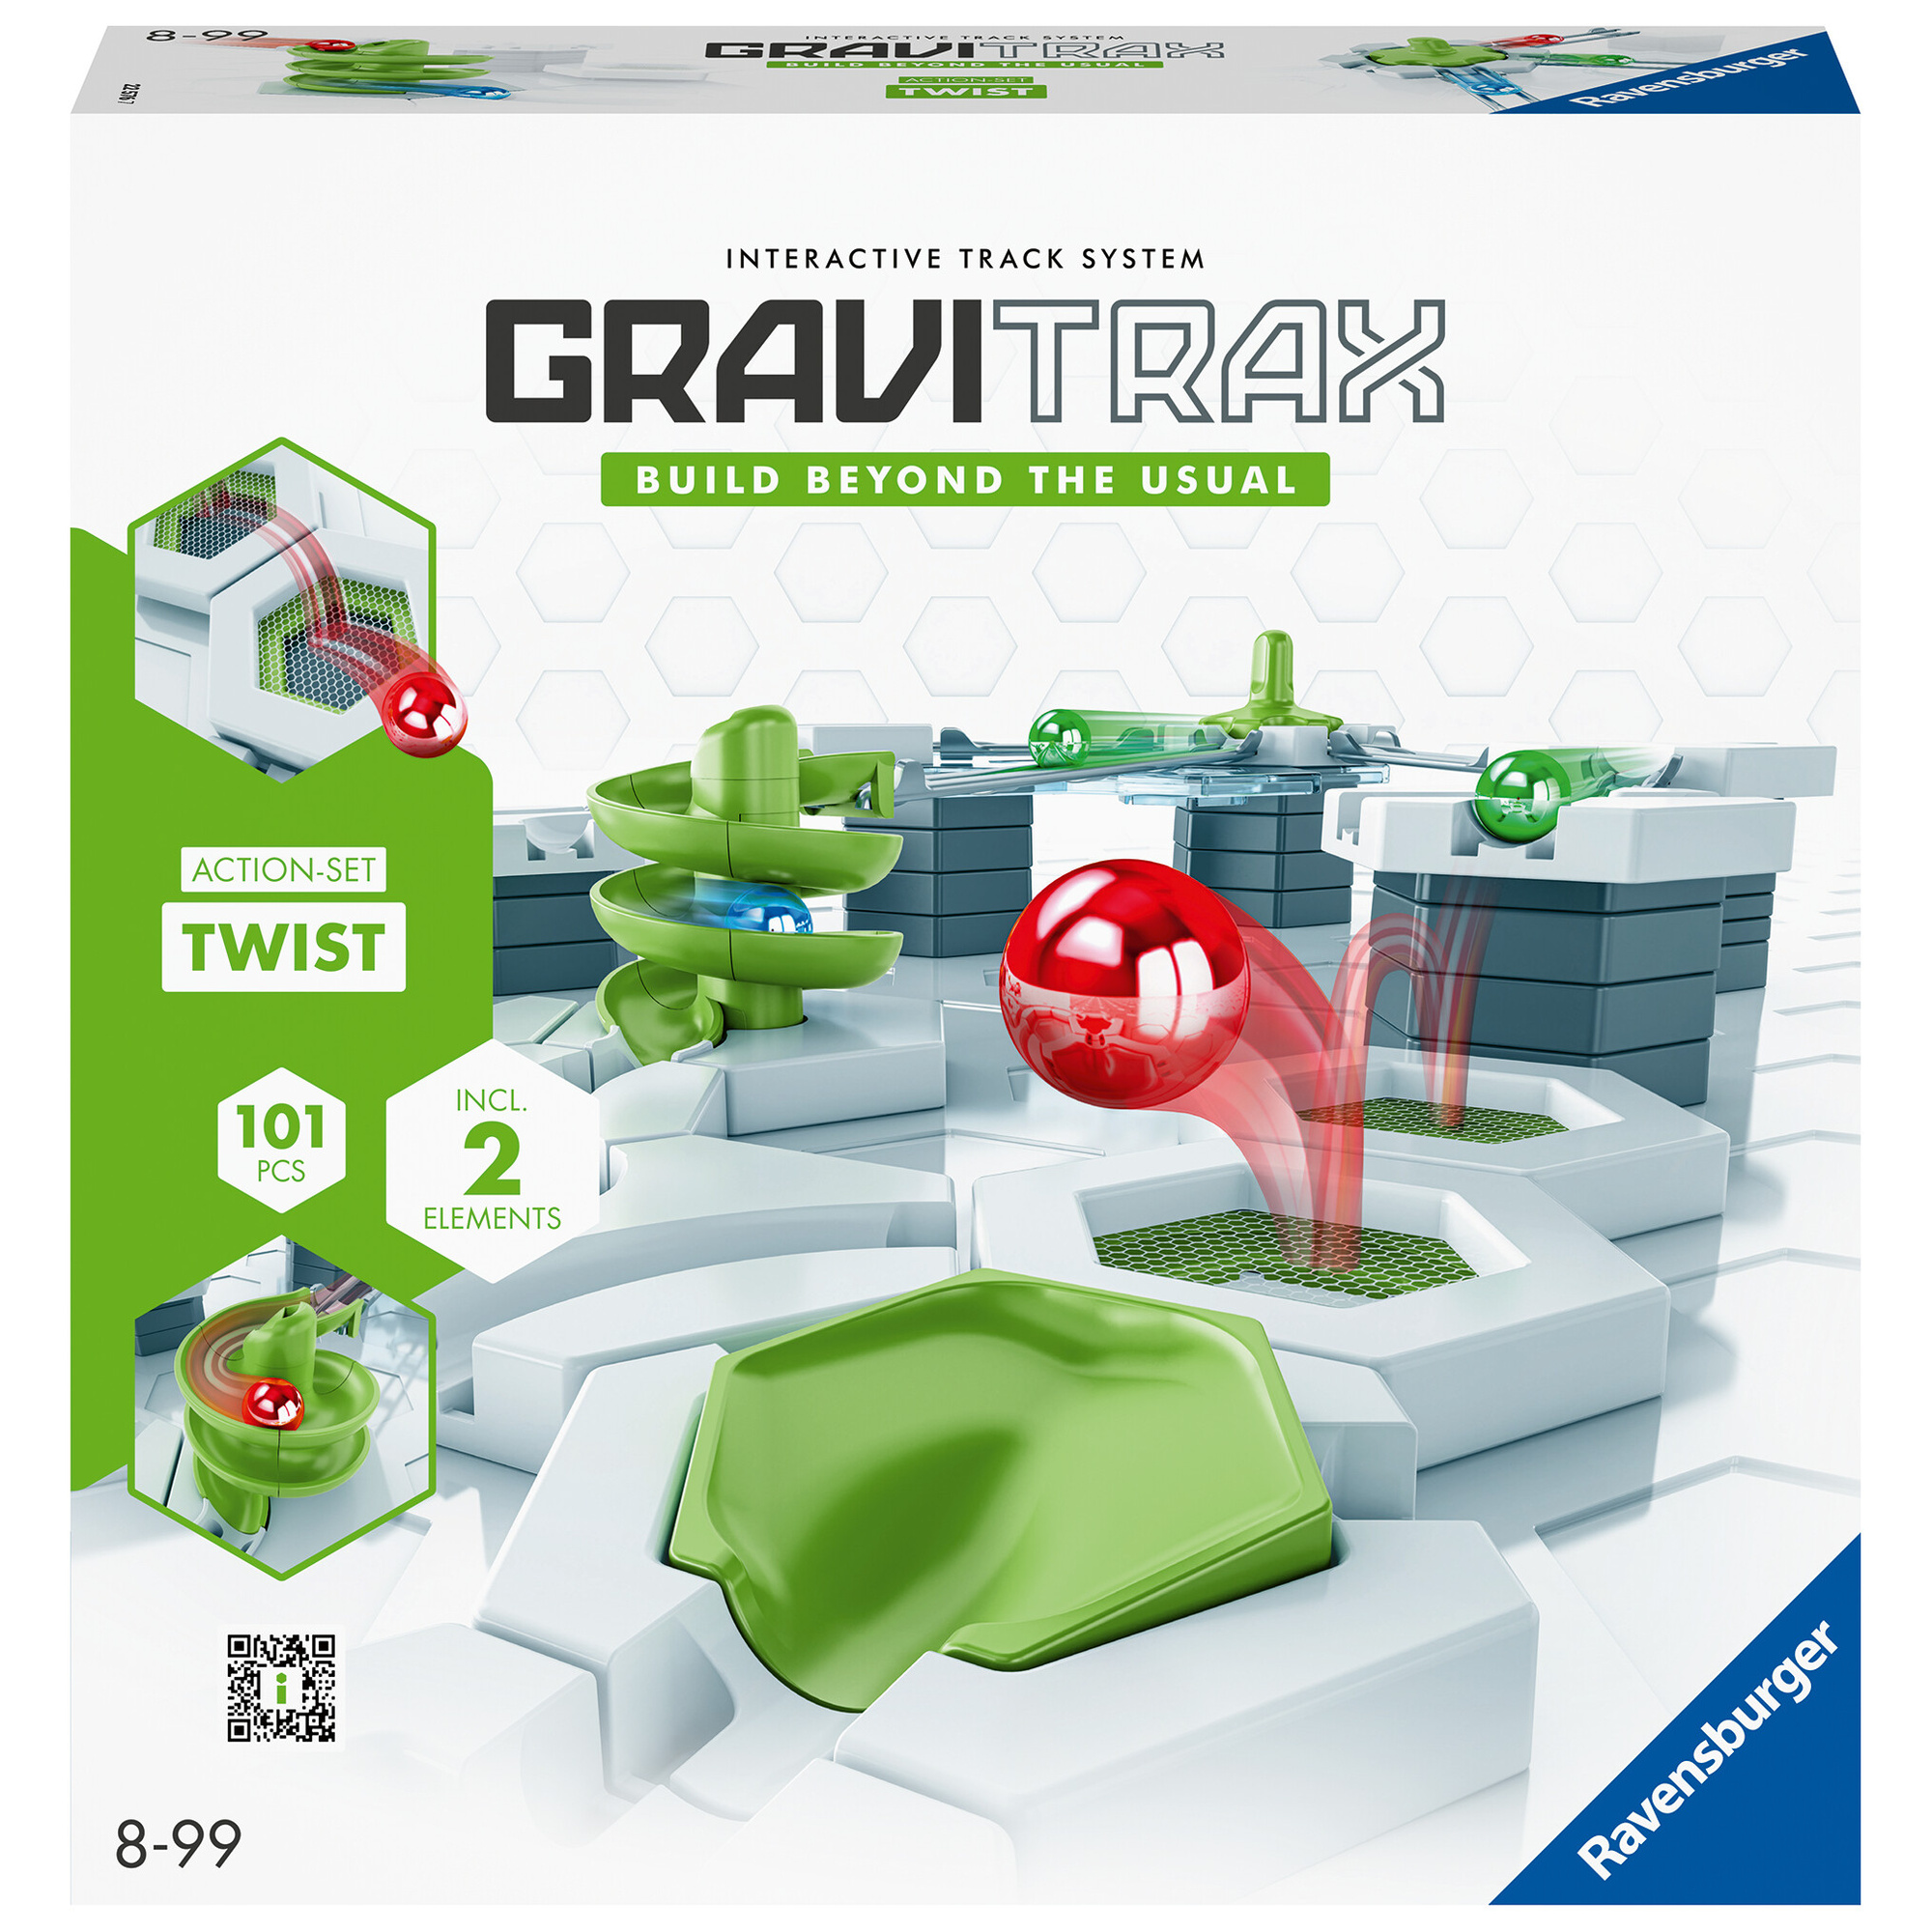 Ravensburger gravitrax action-set twister starter set, pista di biglie, gioco educativo stem, più di 100 pz, compatibile con tutti i gravitrax, 8+ - GRAVITRAX